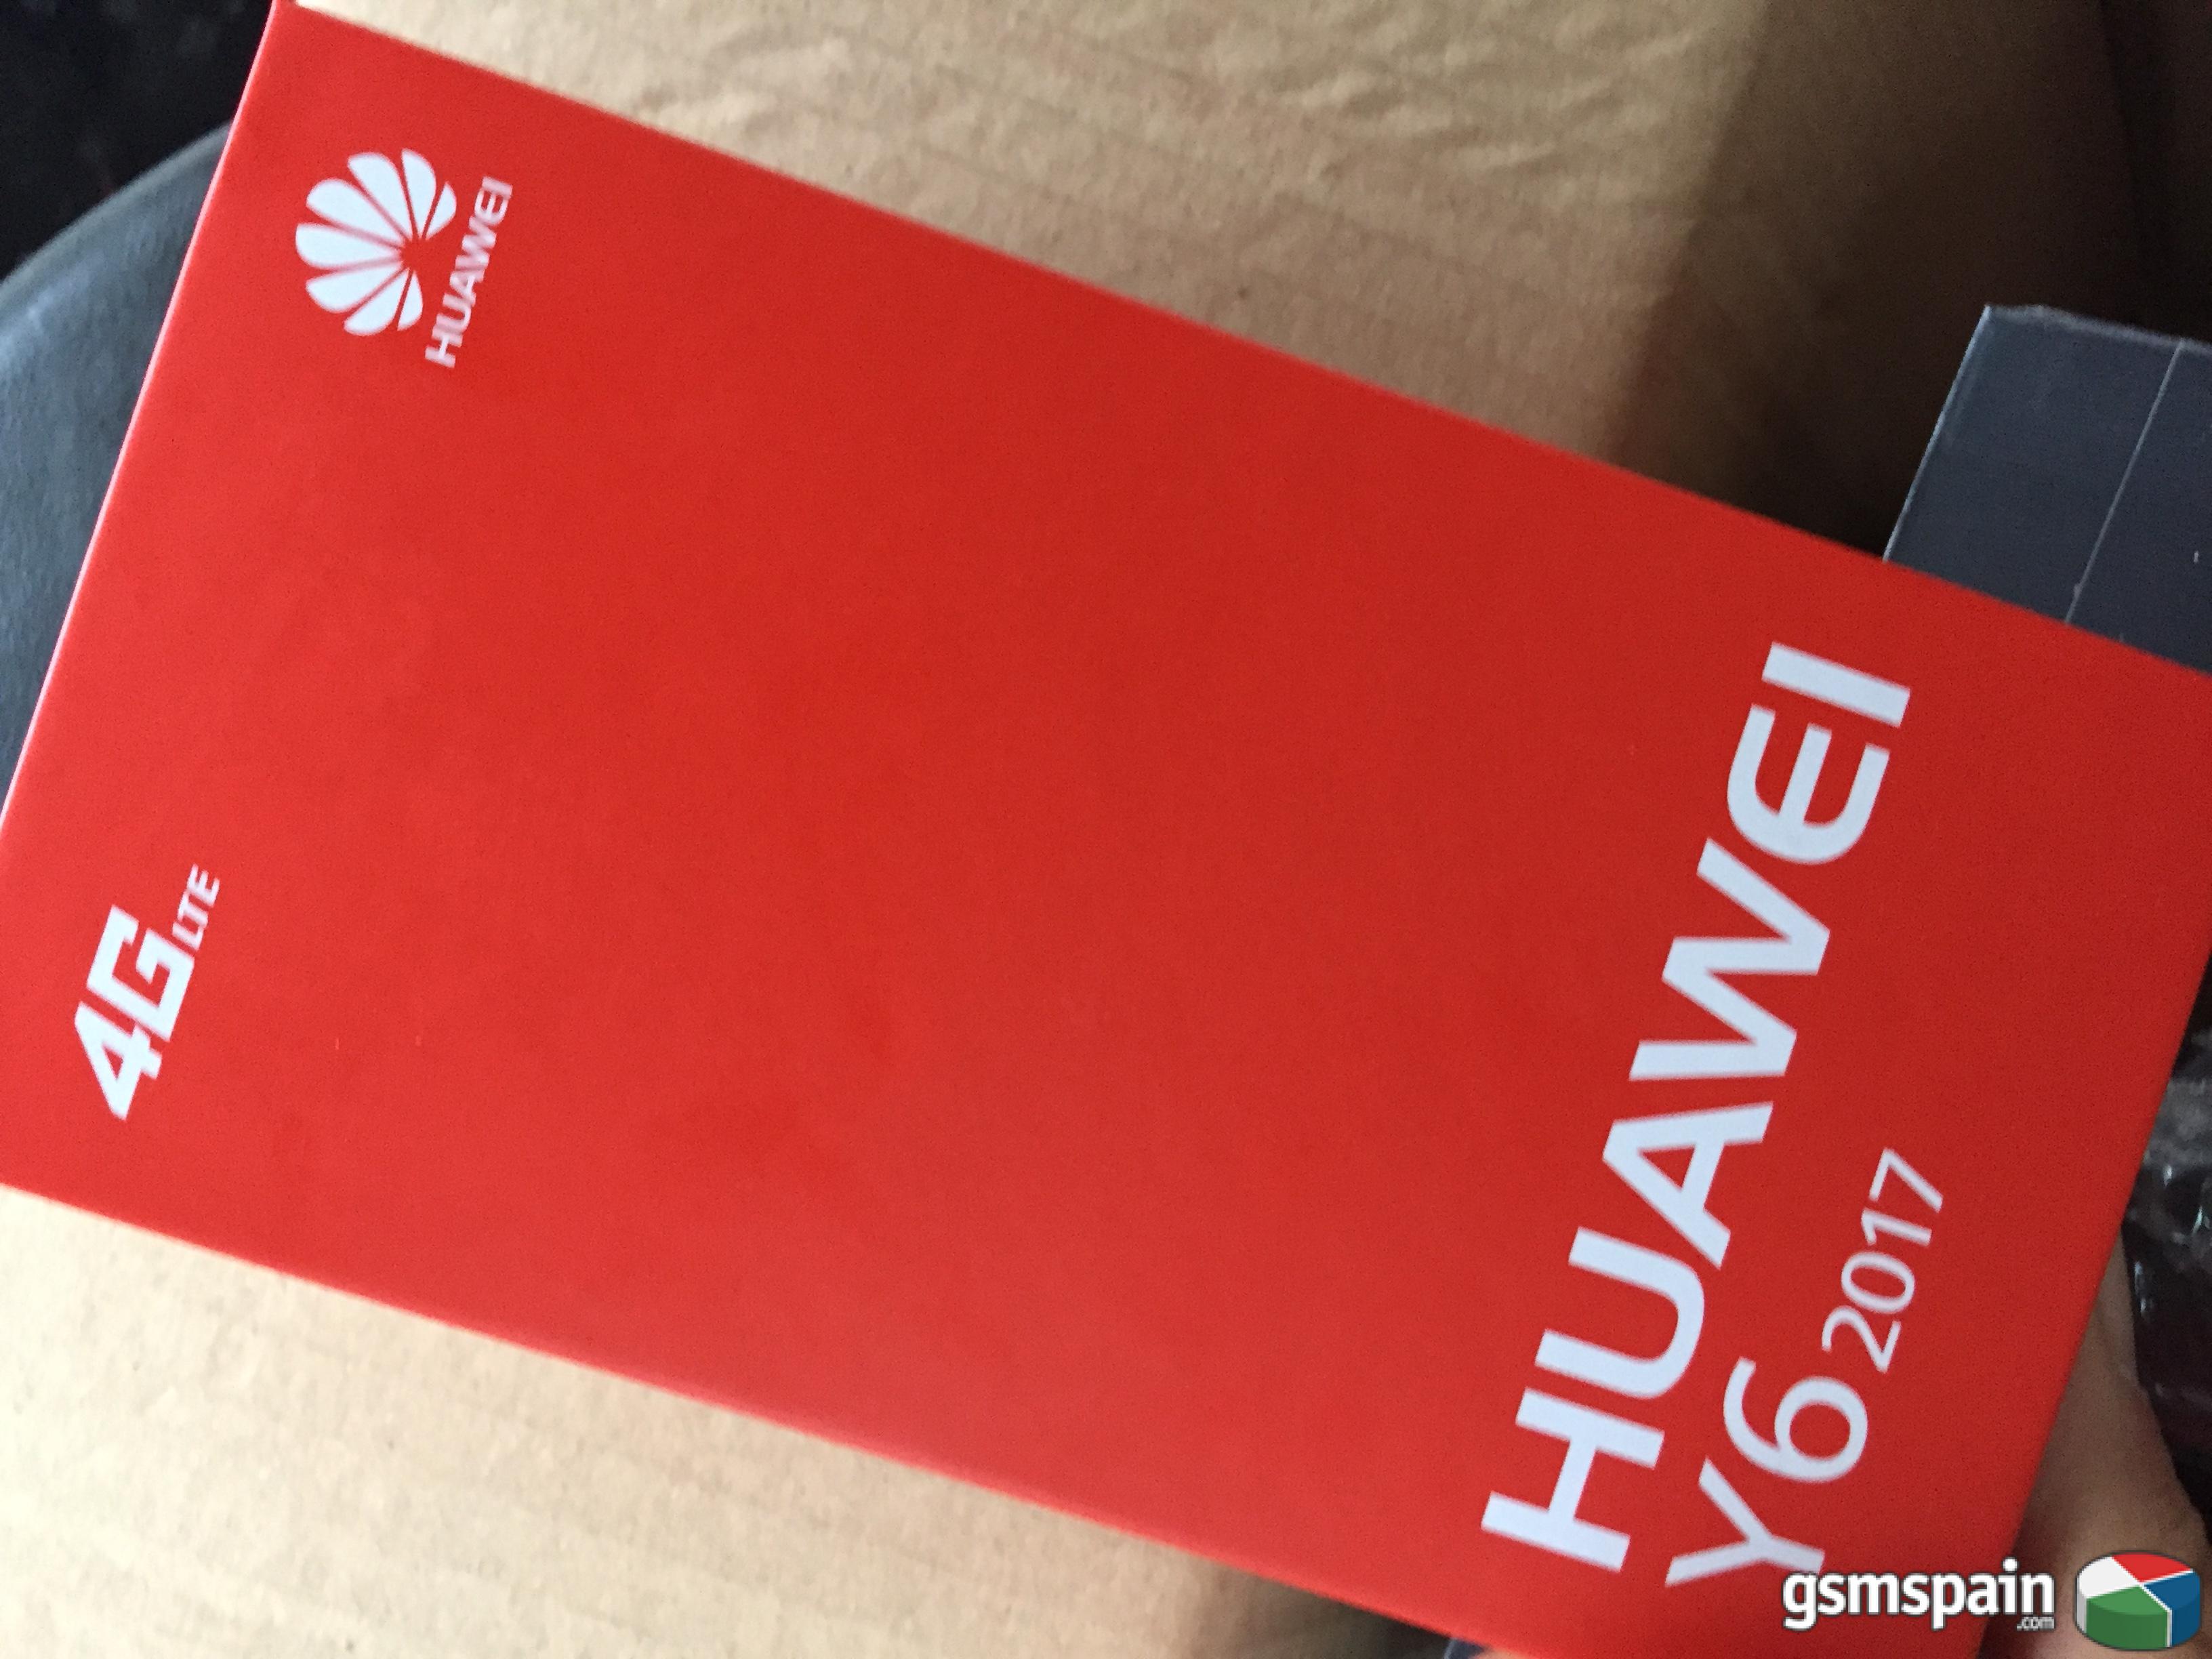 [vendo] Huawei Mate 10 Y Y6 2017 Libres, Precintados Y Con Factura